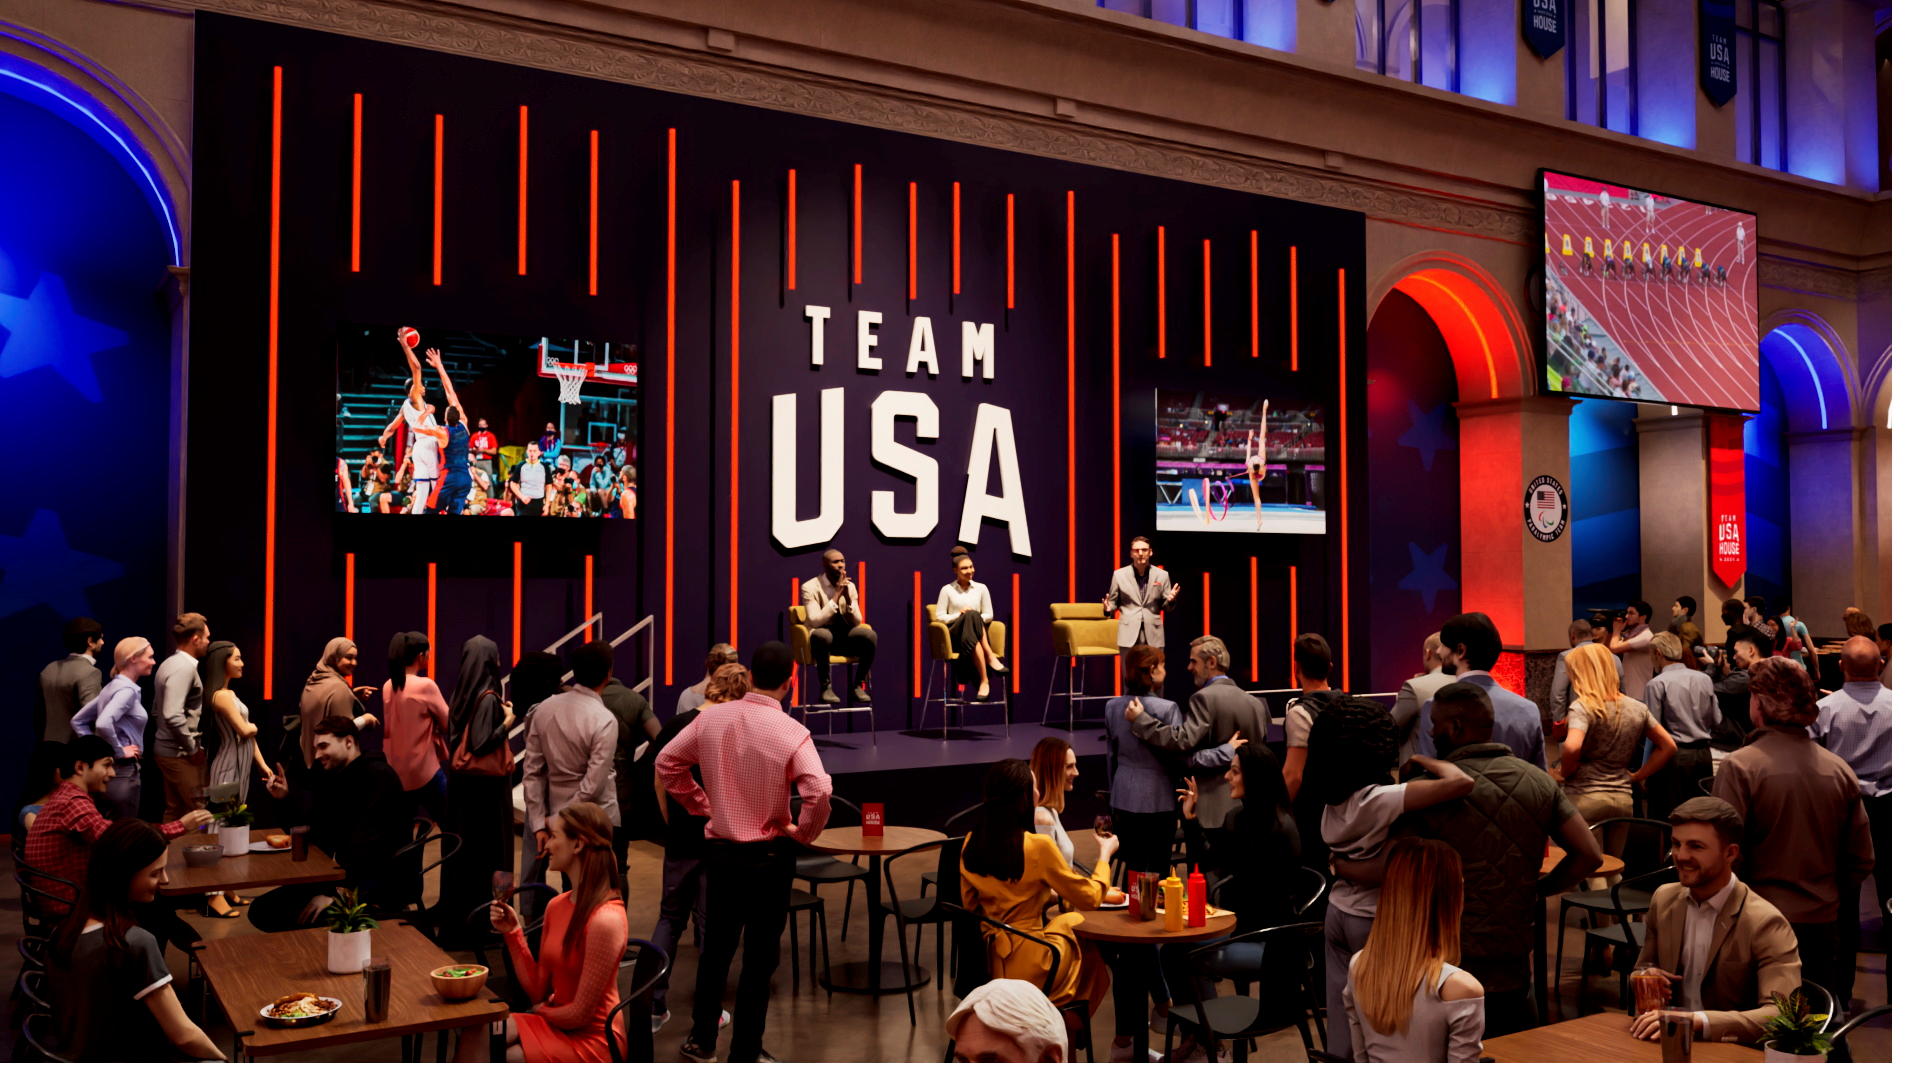 Le Team USA s'est offert le Palais Brongniart, en plein cœur de la Capitale, pour célébrer ses champions lors des Jeux olympiques et paralympiques. DR